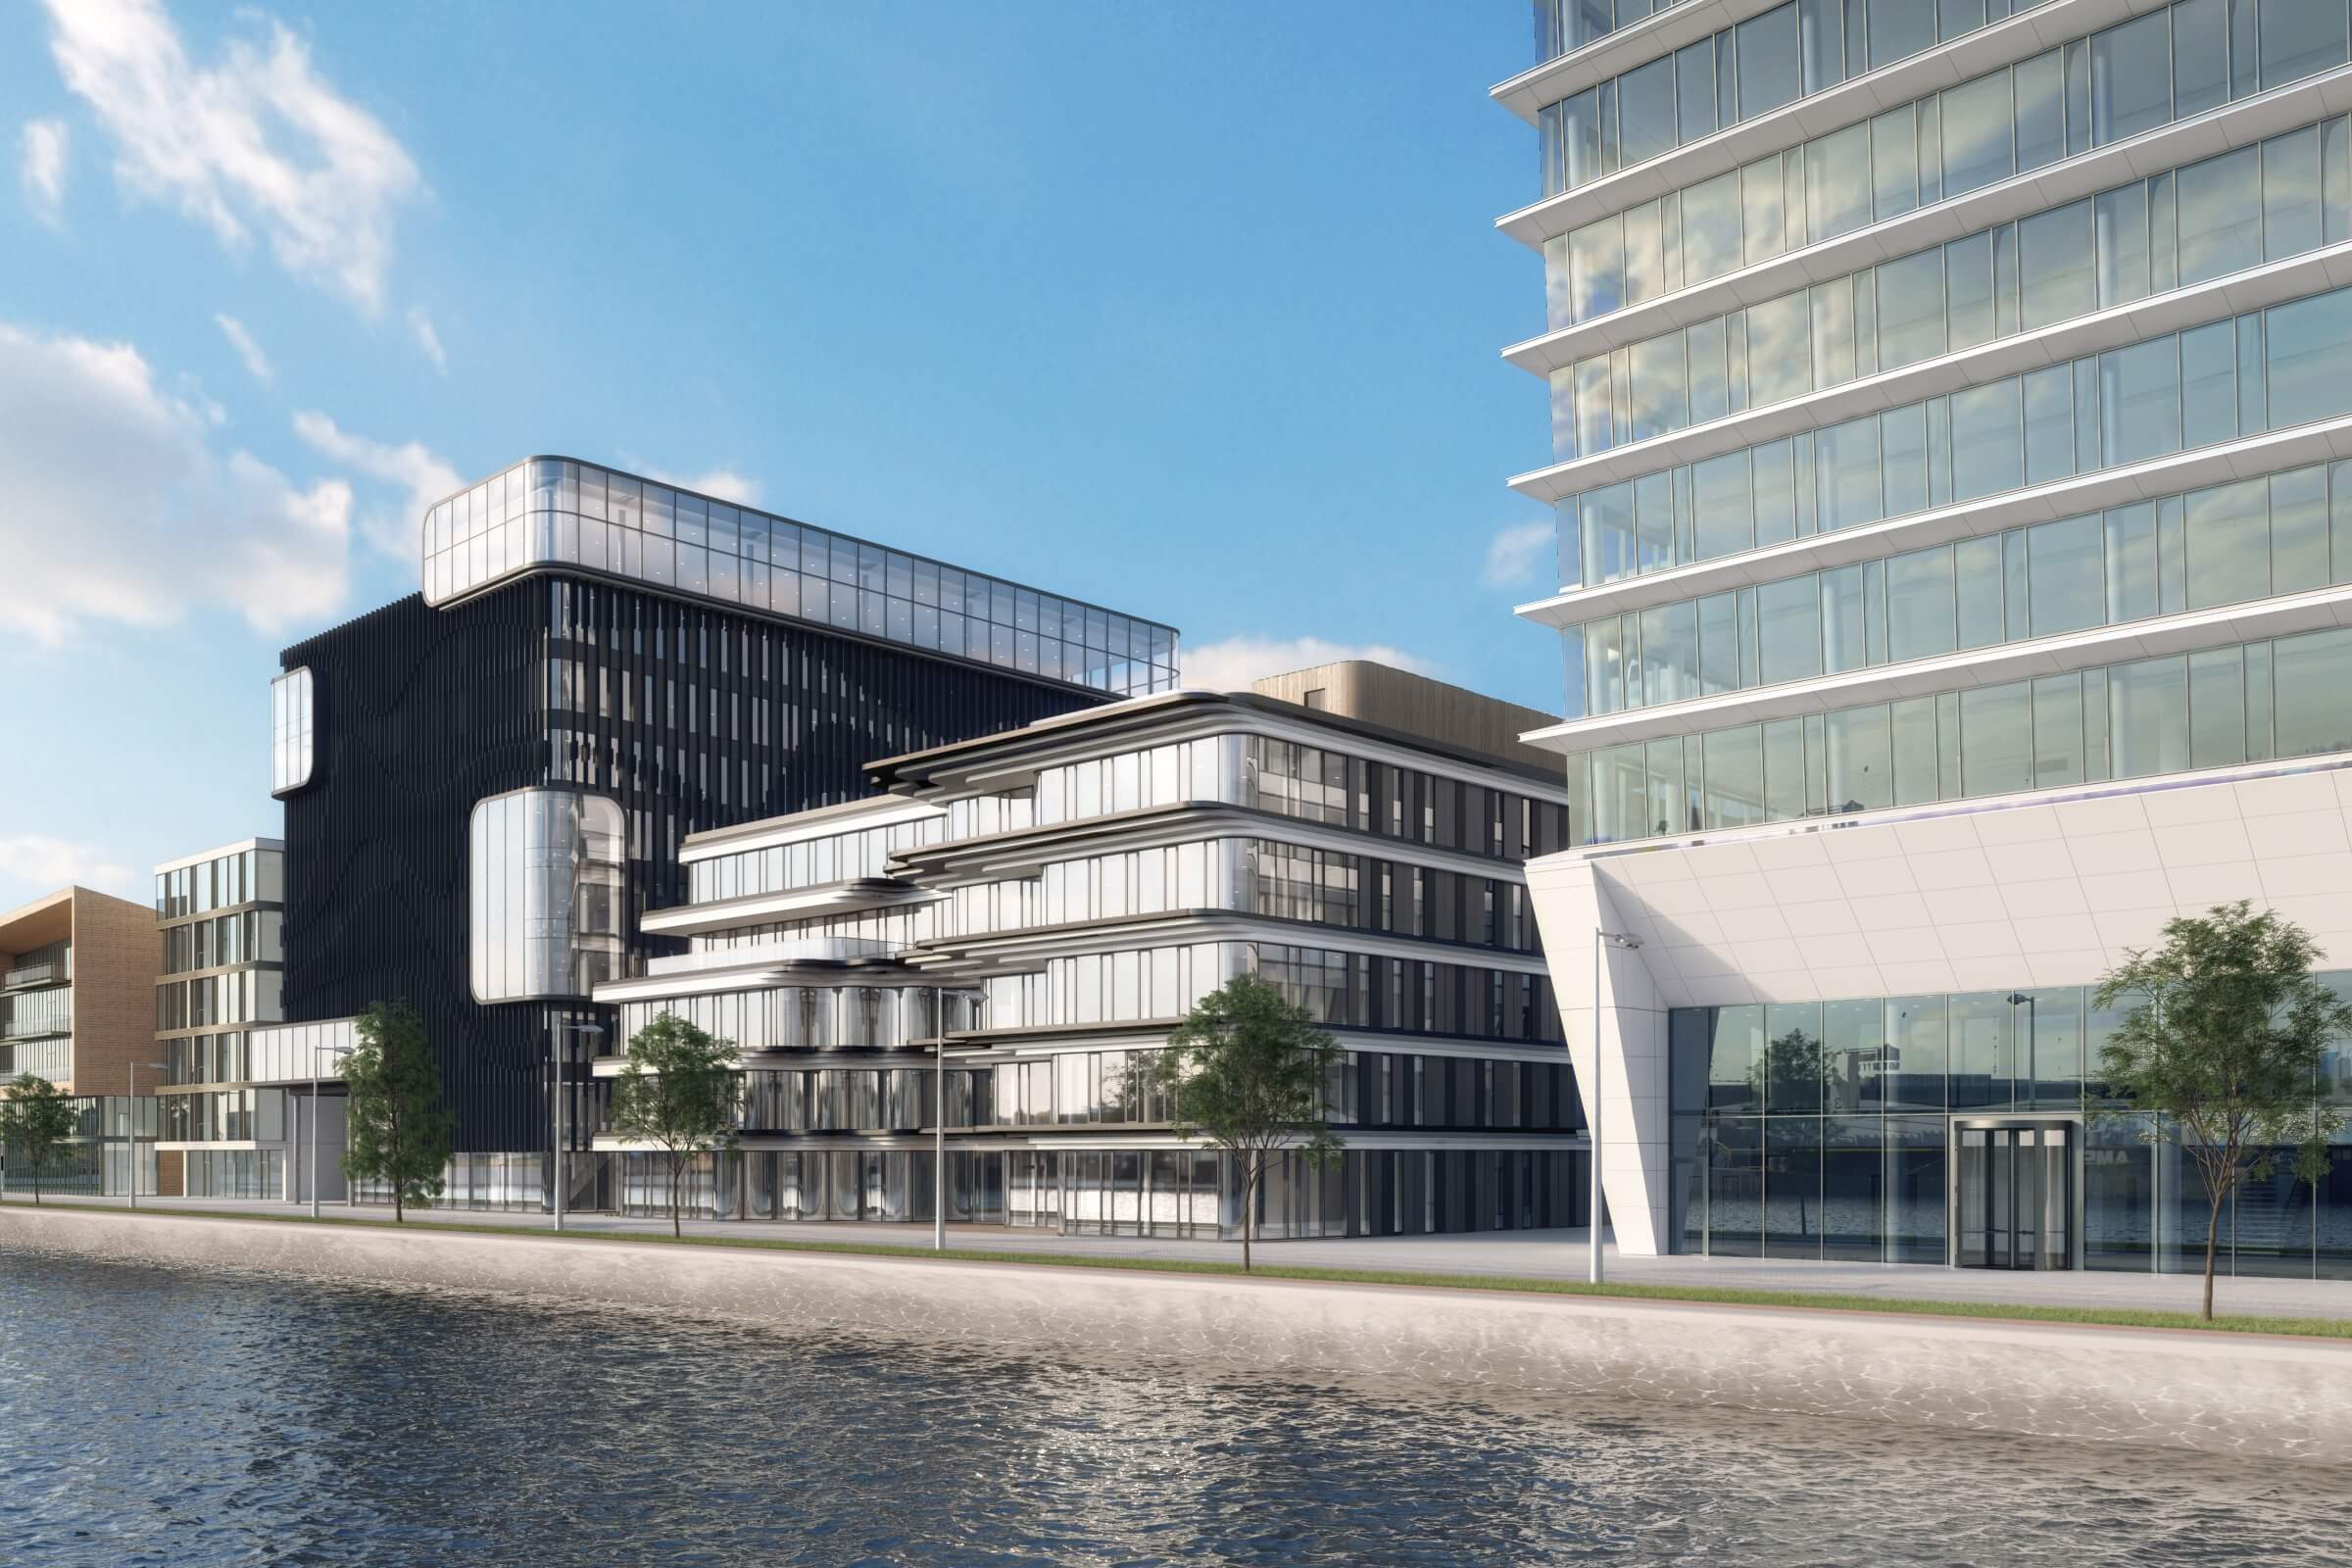 Brouwerij repetitie tumor Kantoor Tommy Hilfiger en Calvin Klein Amsterdam - Nexton - Building the  smart